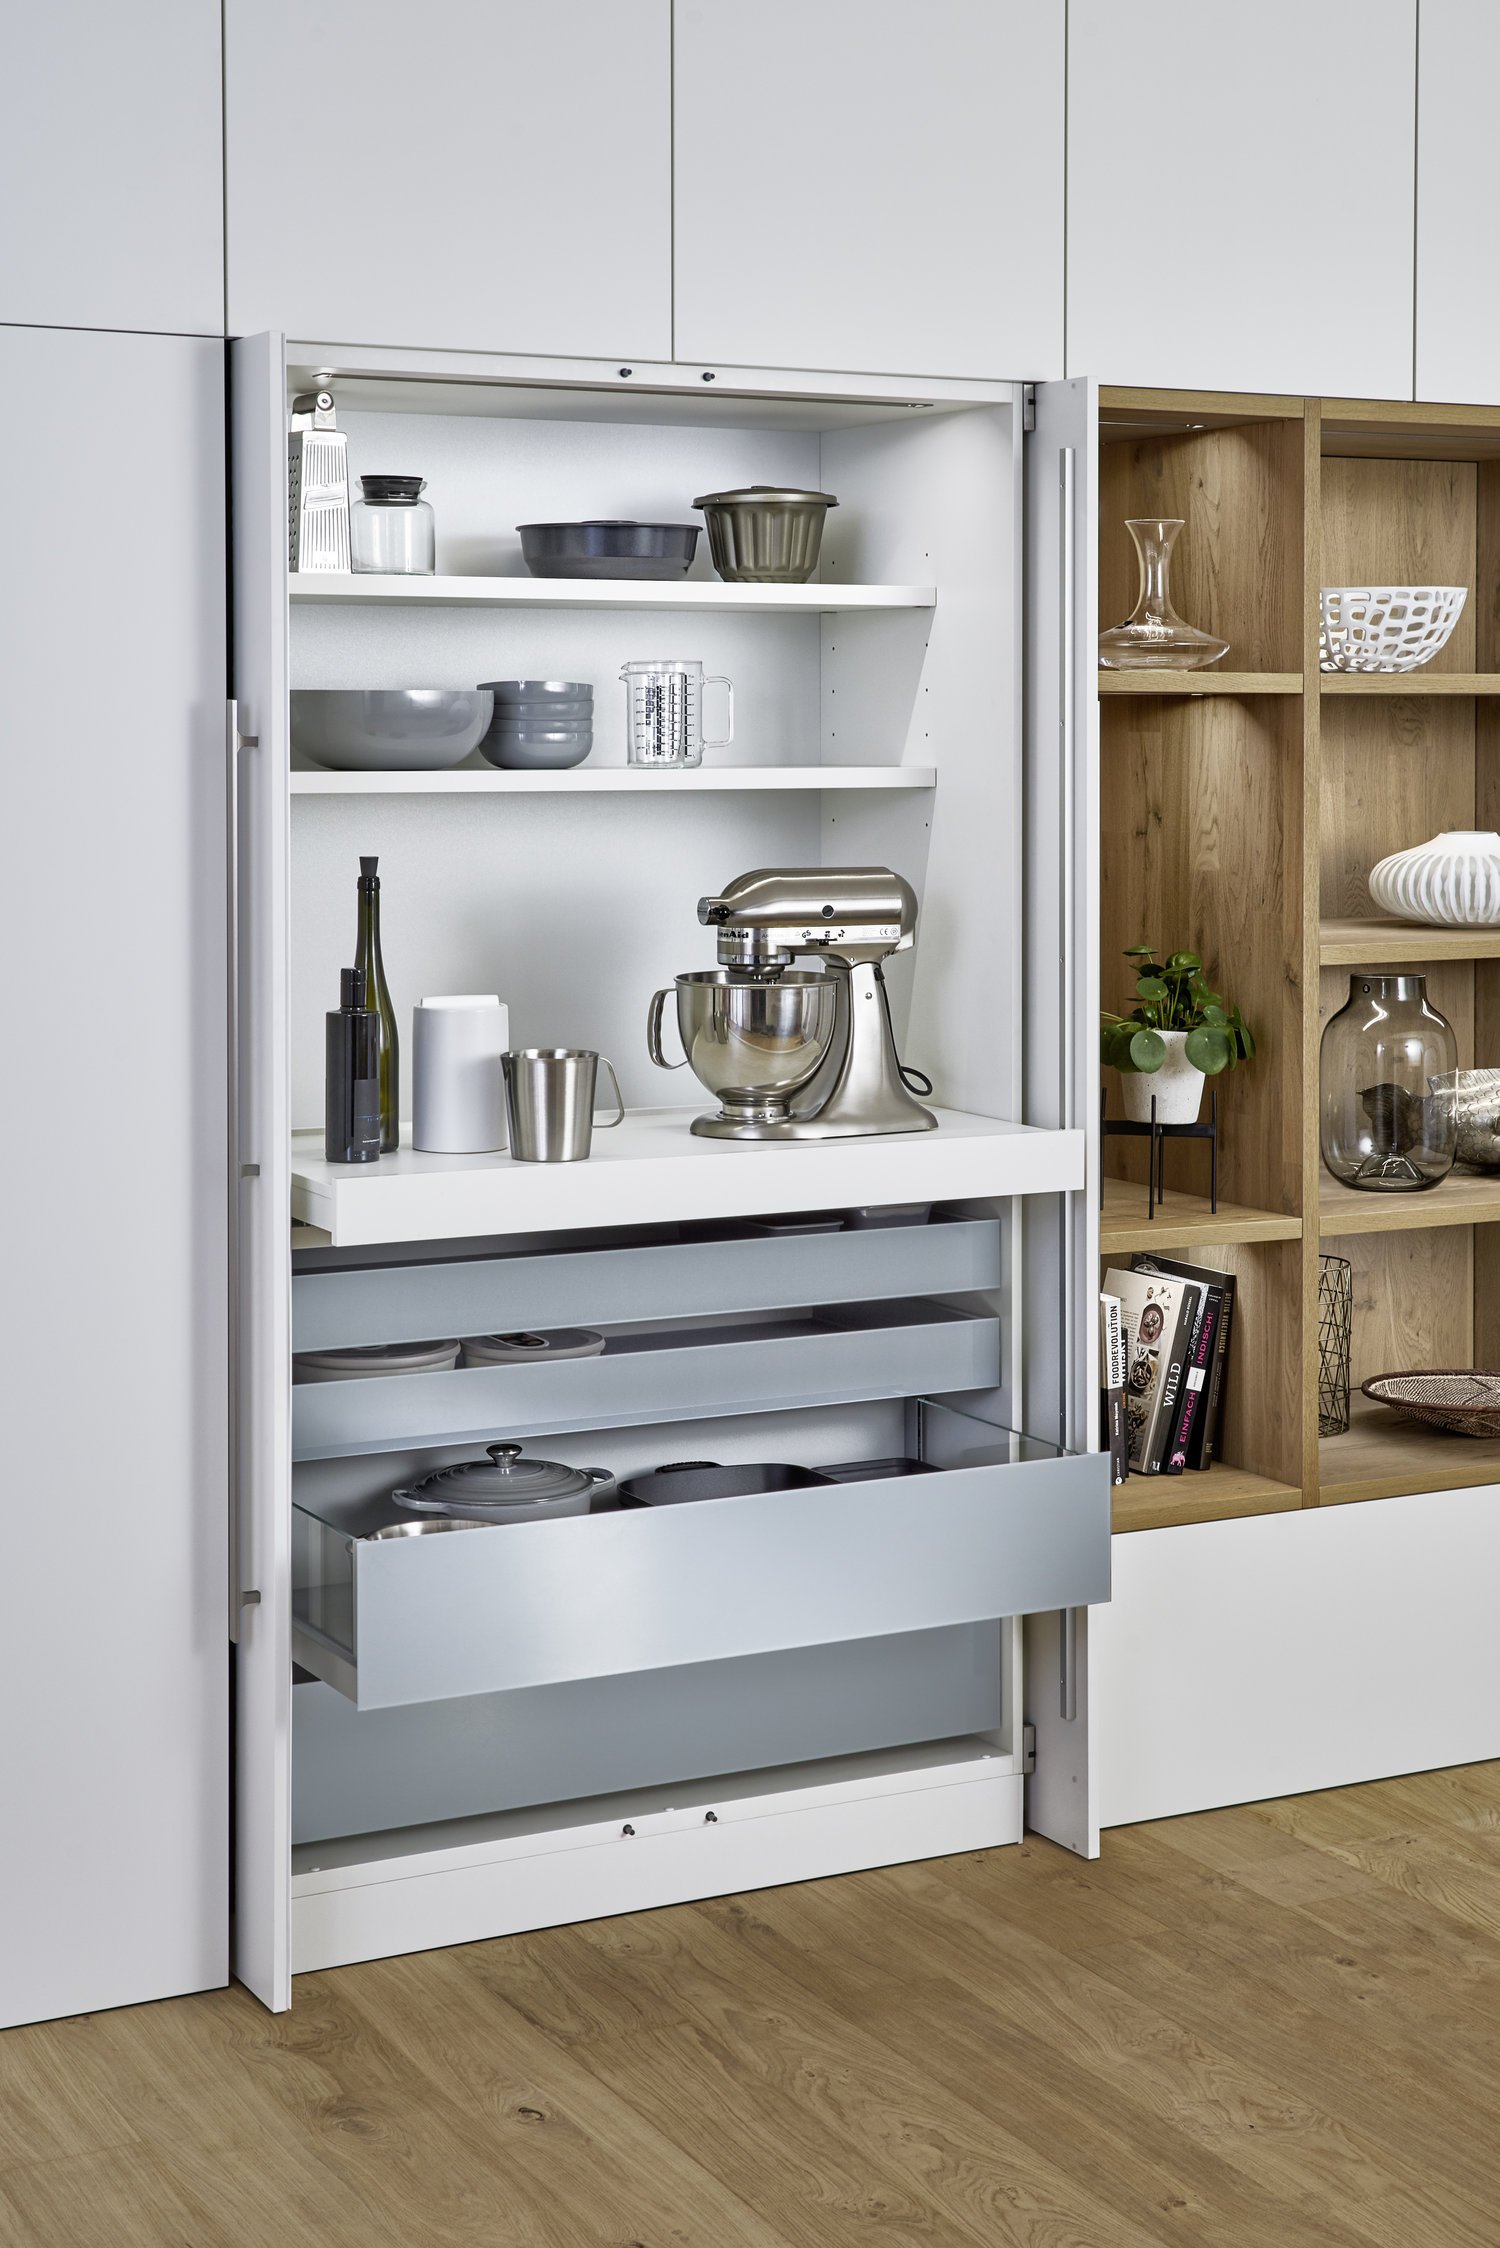 BONDI-E  XYLO connaught kitchens white minimalist kitchen with woodwork storage 2.jpg